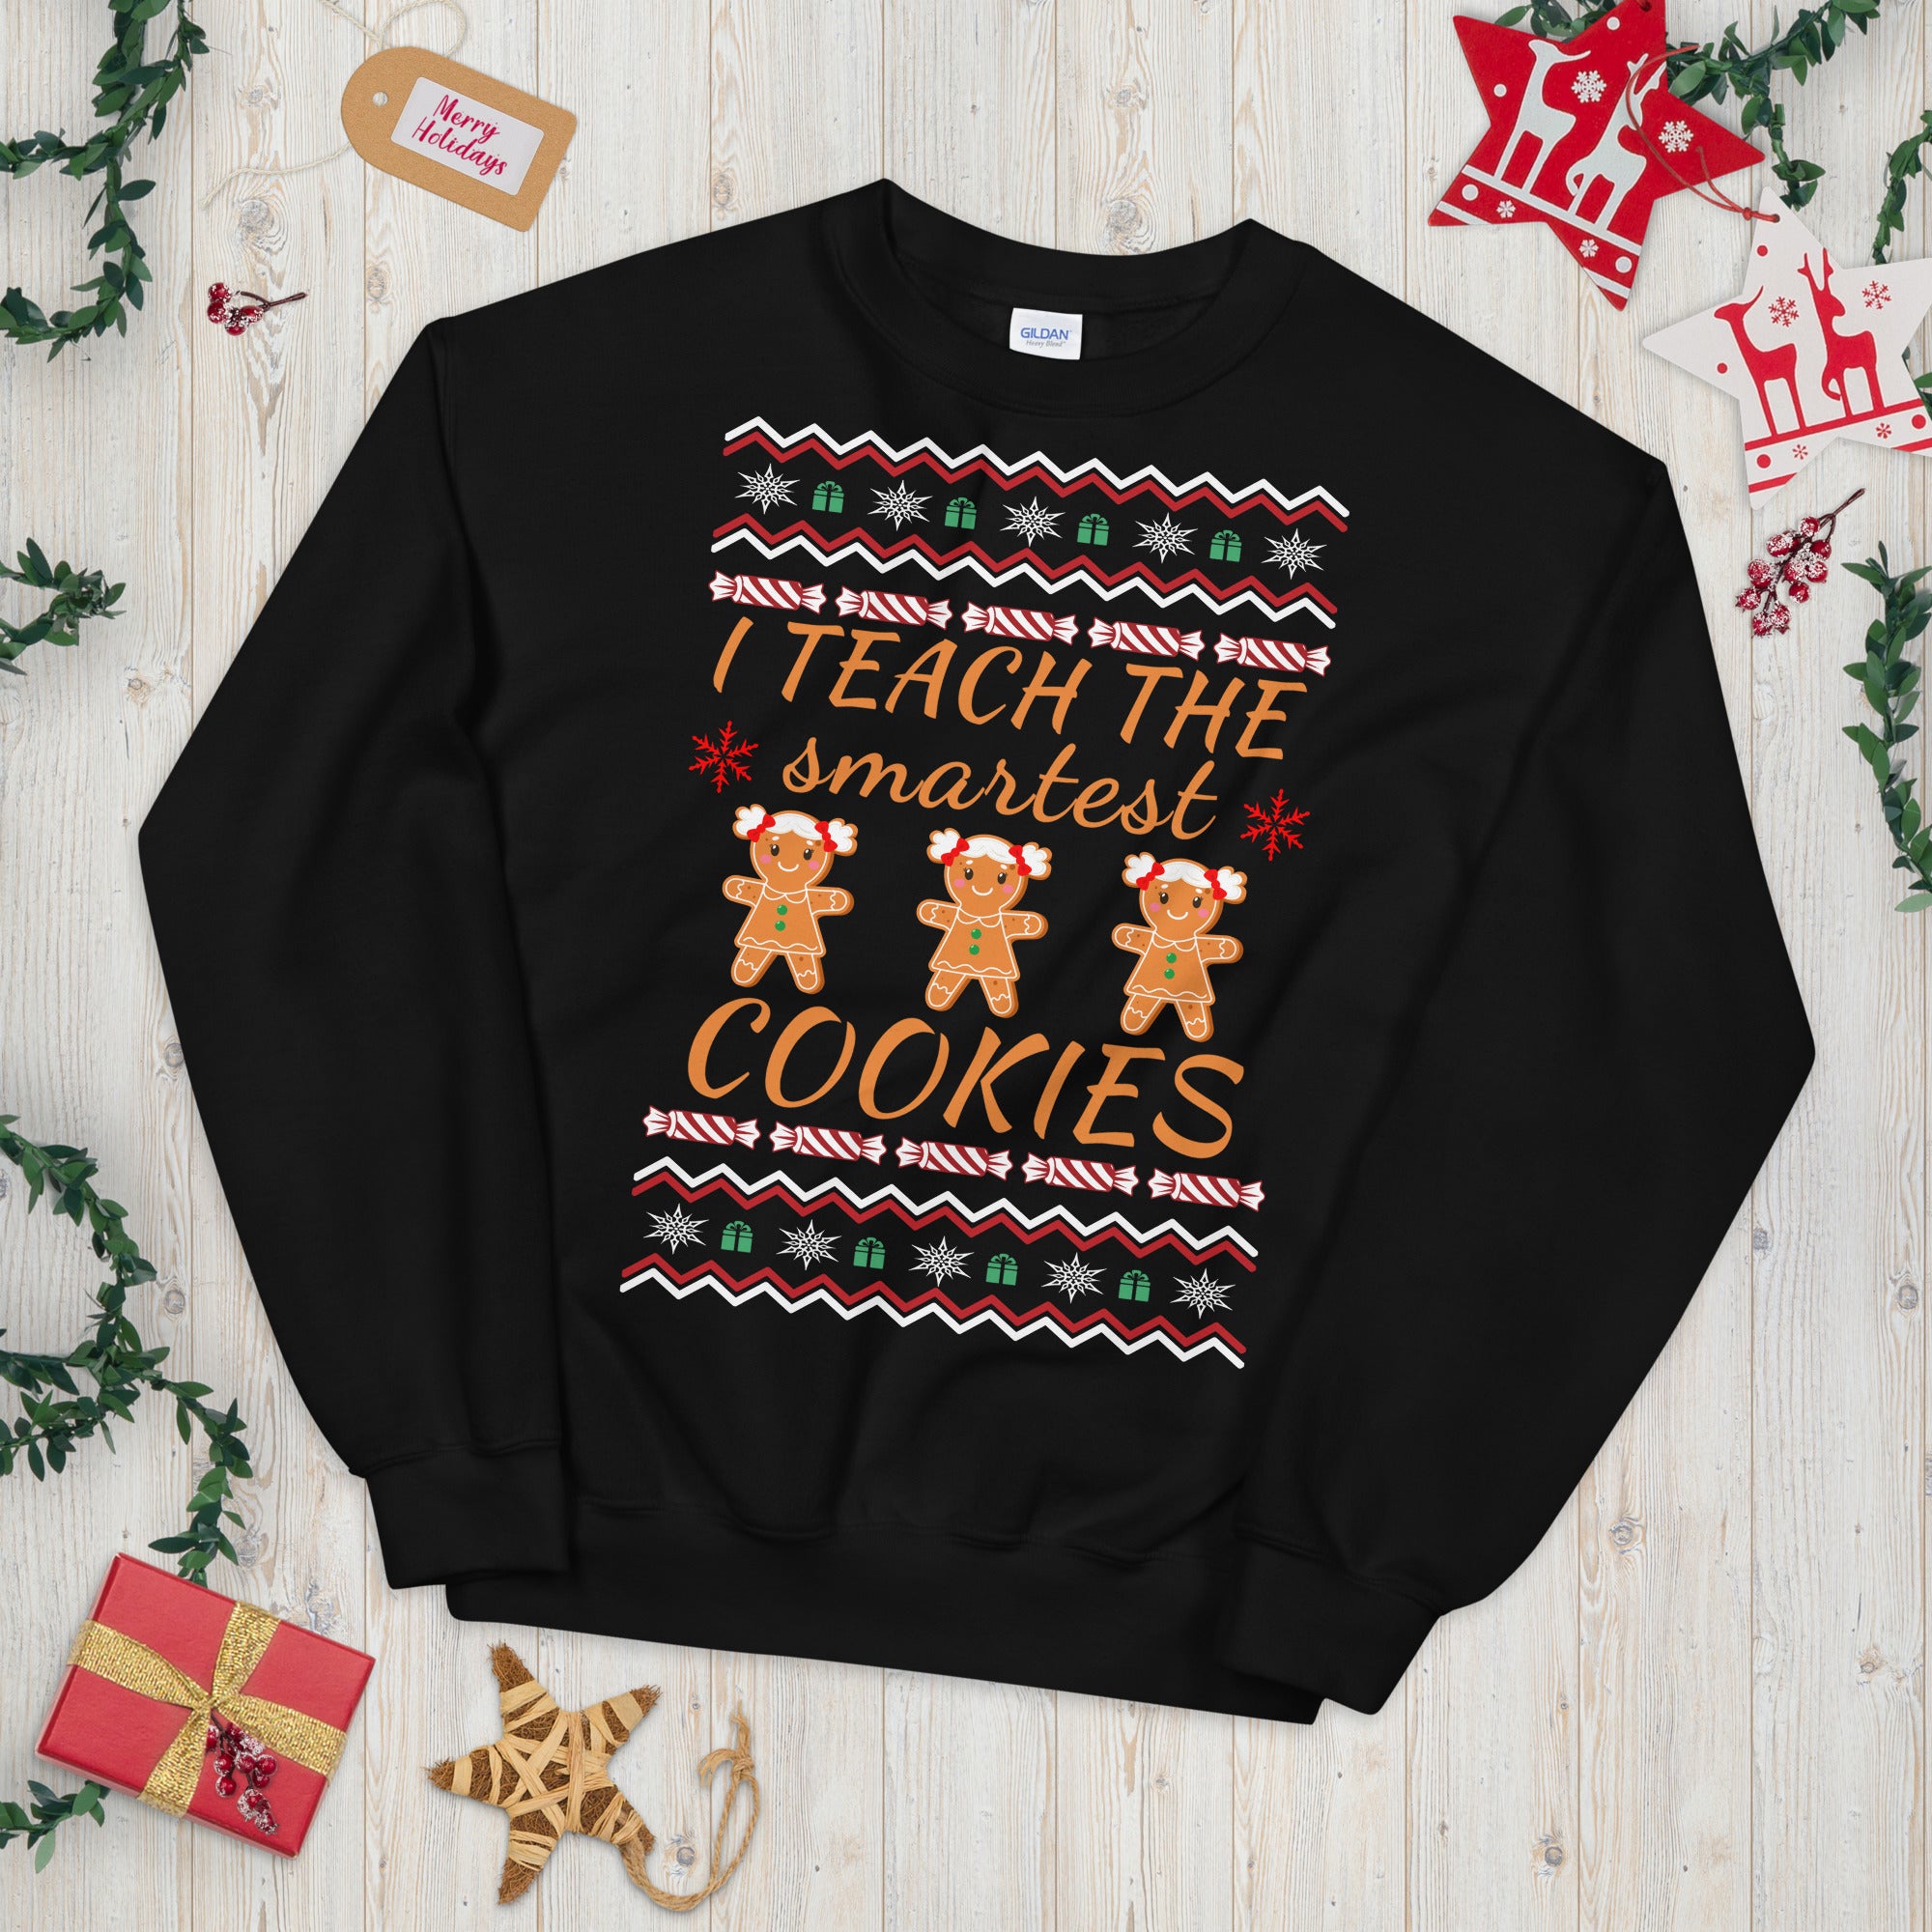 I Teach the Smartest Cookies, Teacher Christmas Sweatshirt, Teacher Christmas Gifts, Smartest Cookies, Smart Cookies Sweater, Xmas Teacher